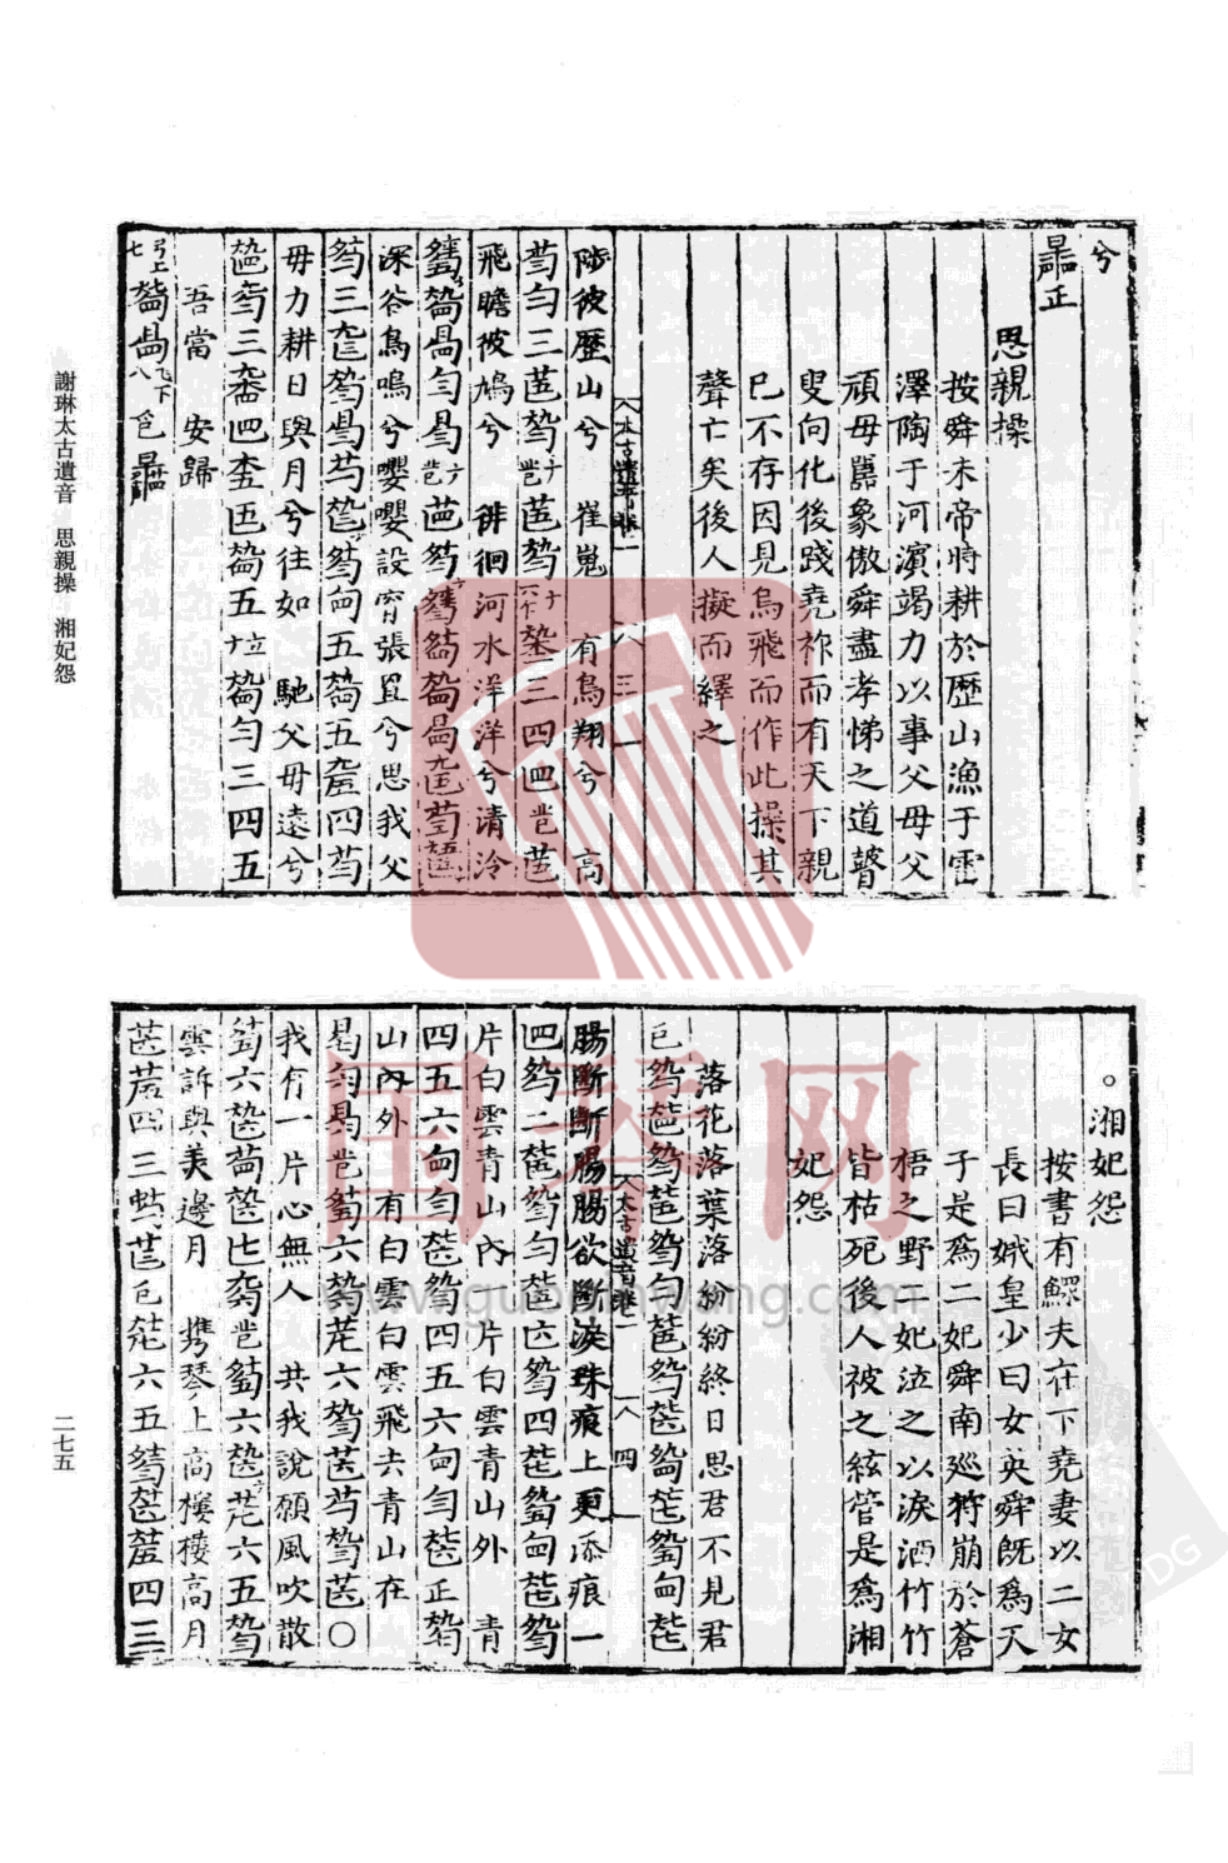 湘妃怨 - 曲谱 - 国琴网,古琴十大名曲,中国古琴行业图片